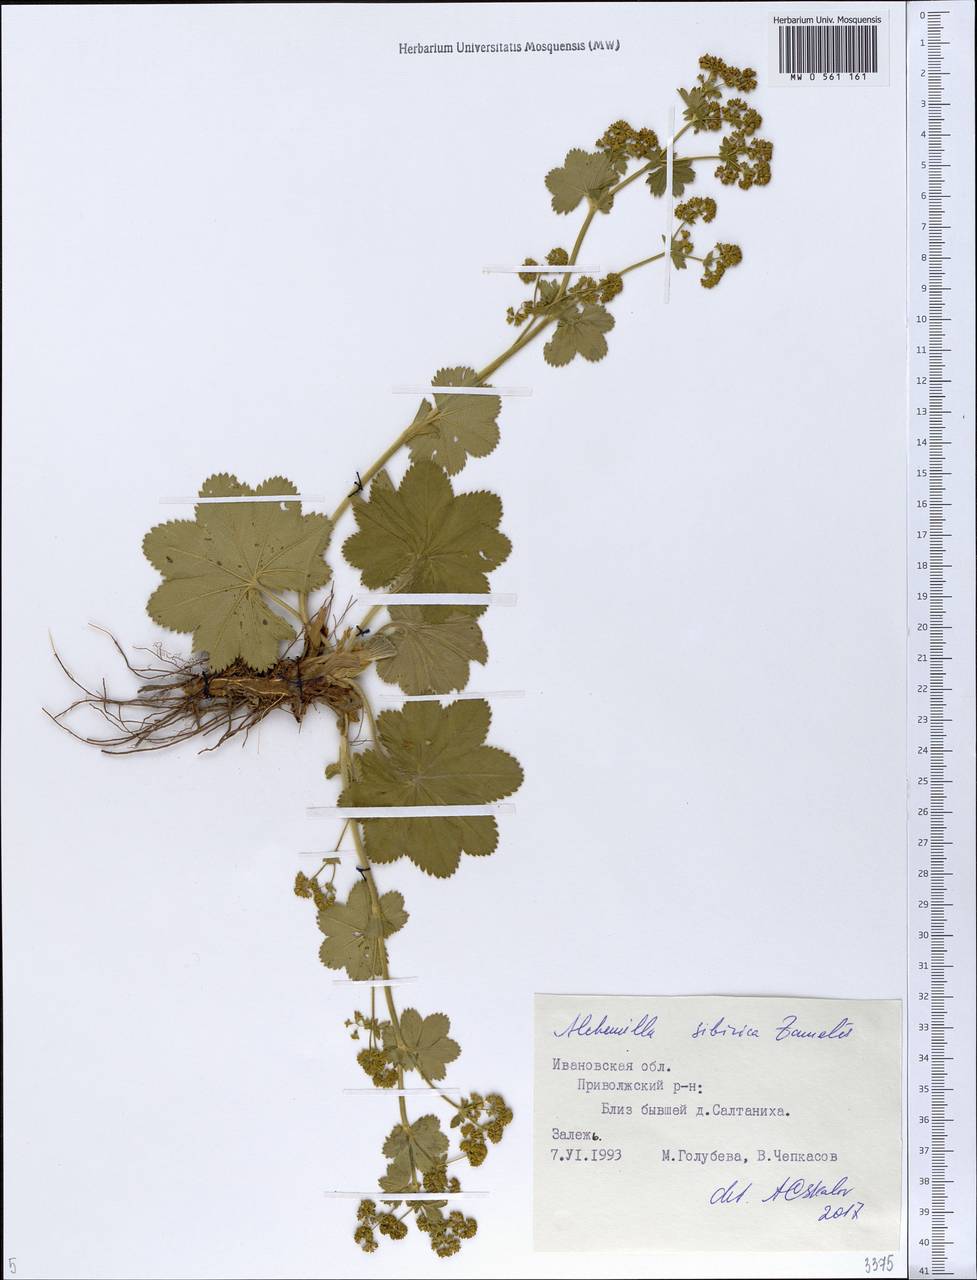 Alchemilla sibirica Zämelis, Eastern Europe, Central forest region (E5) (Russia)